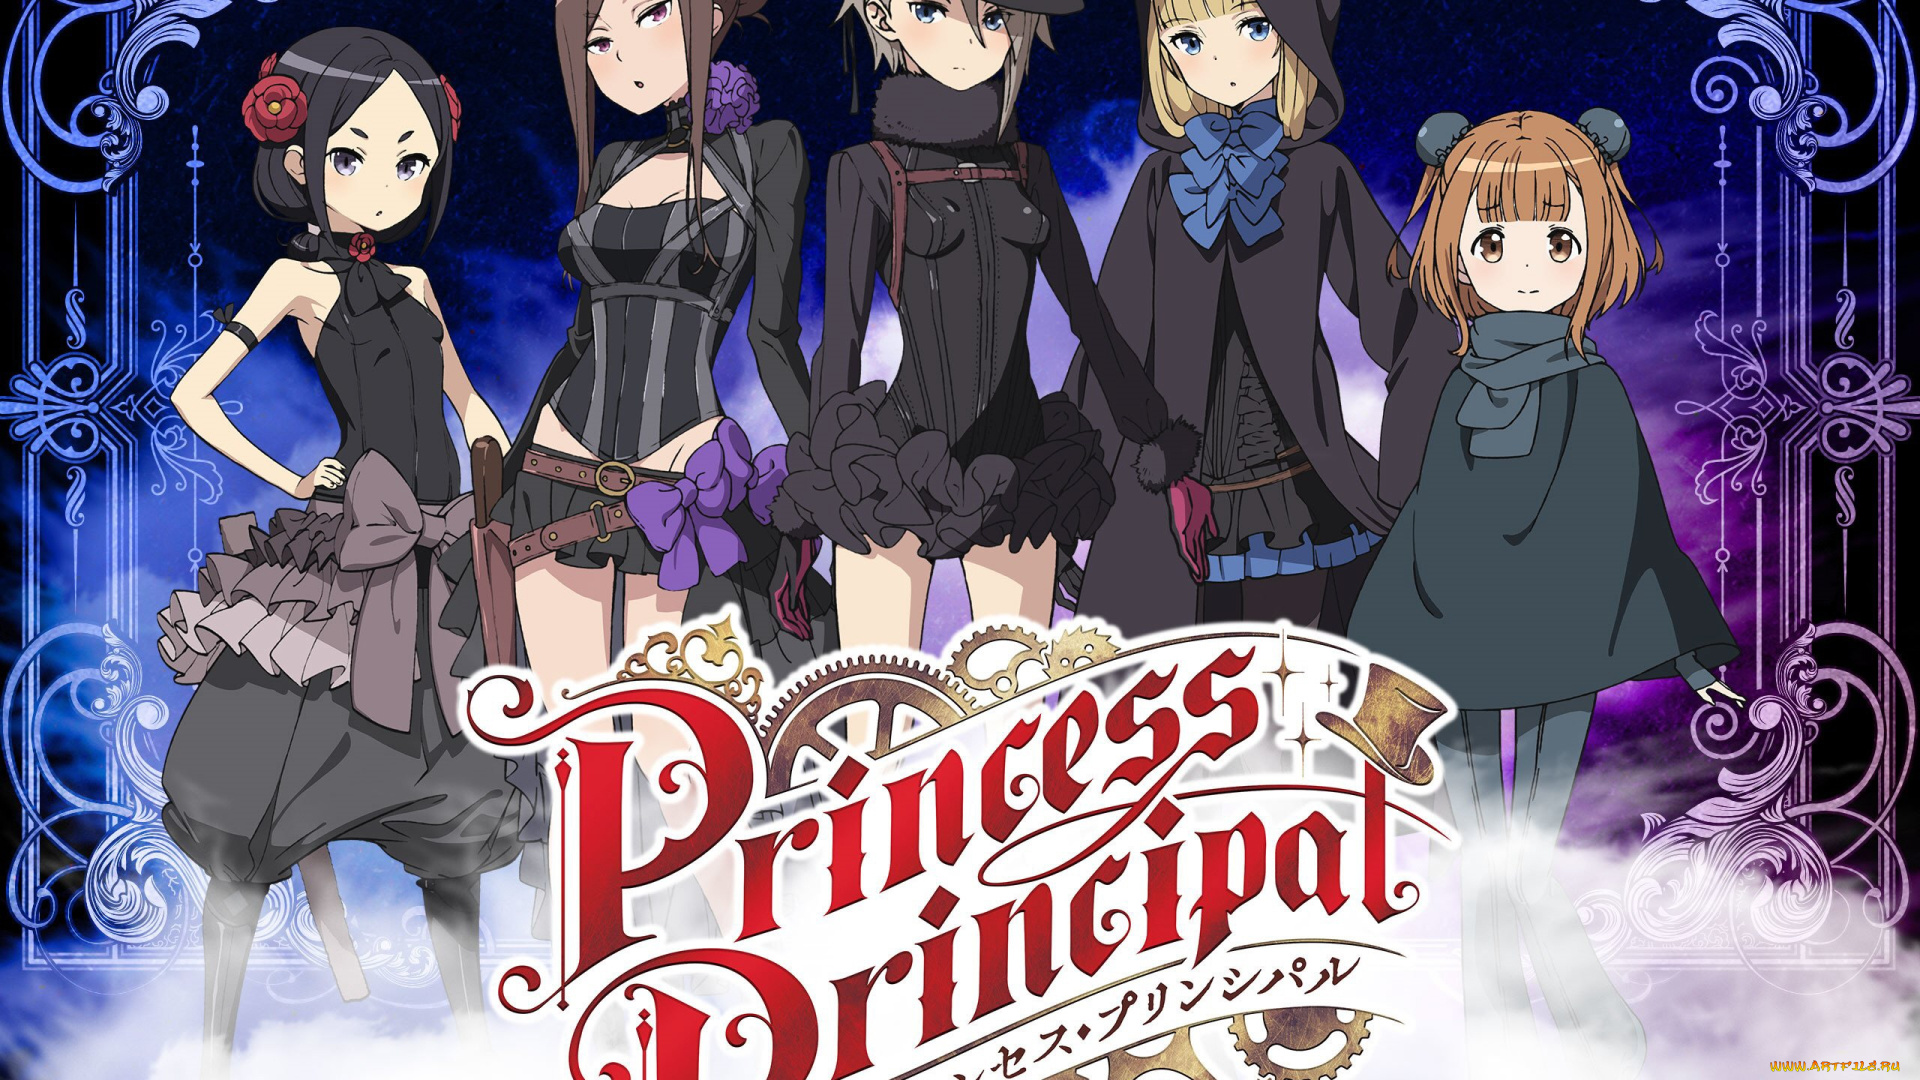 аниме, princess, principal, девушки